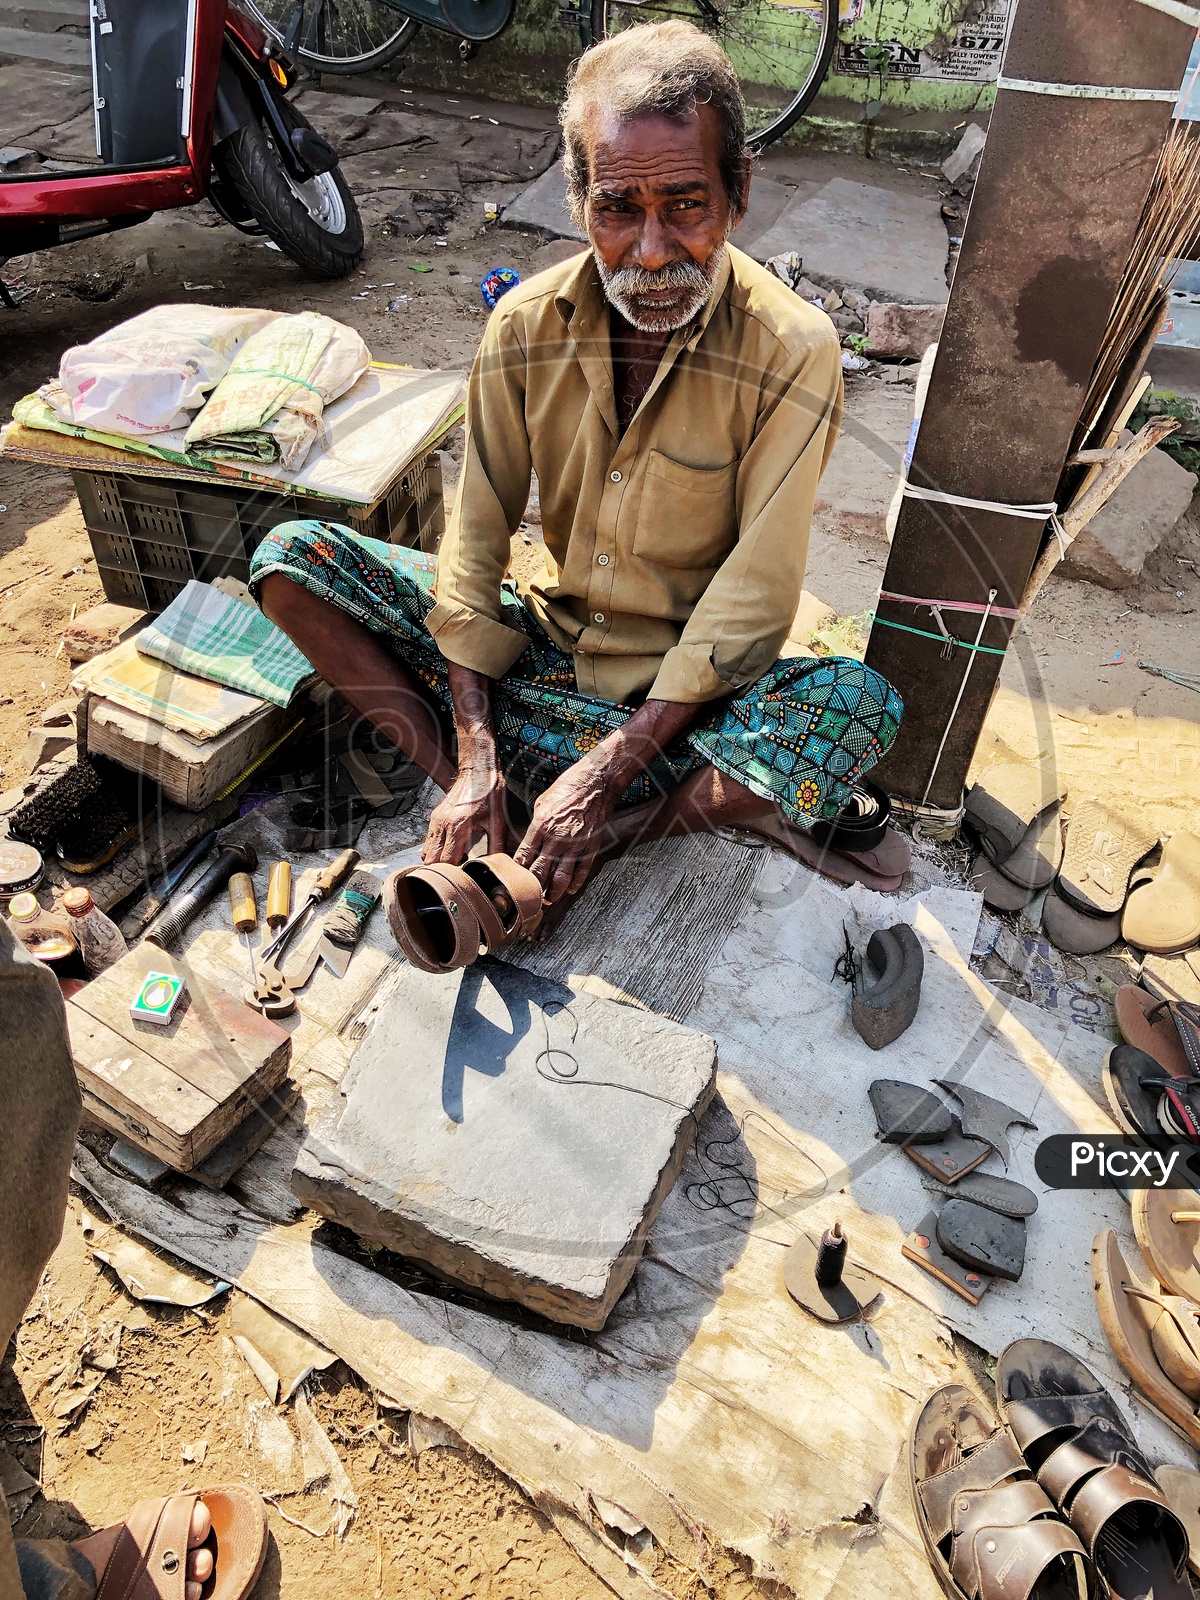 Old man working repairing footwear